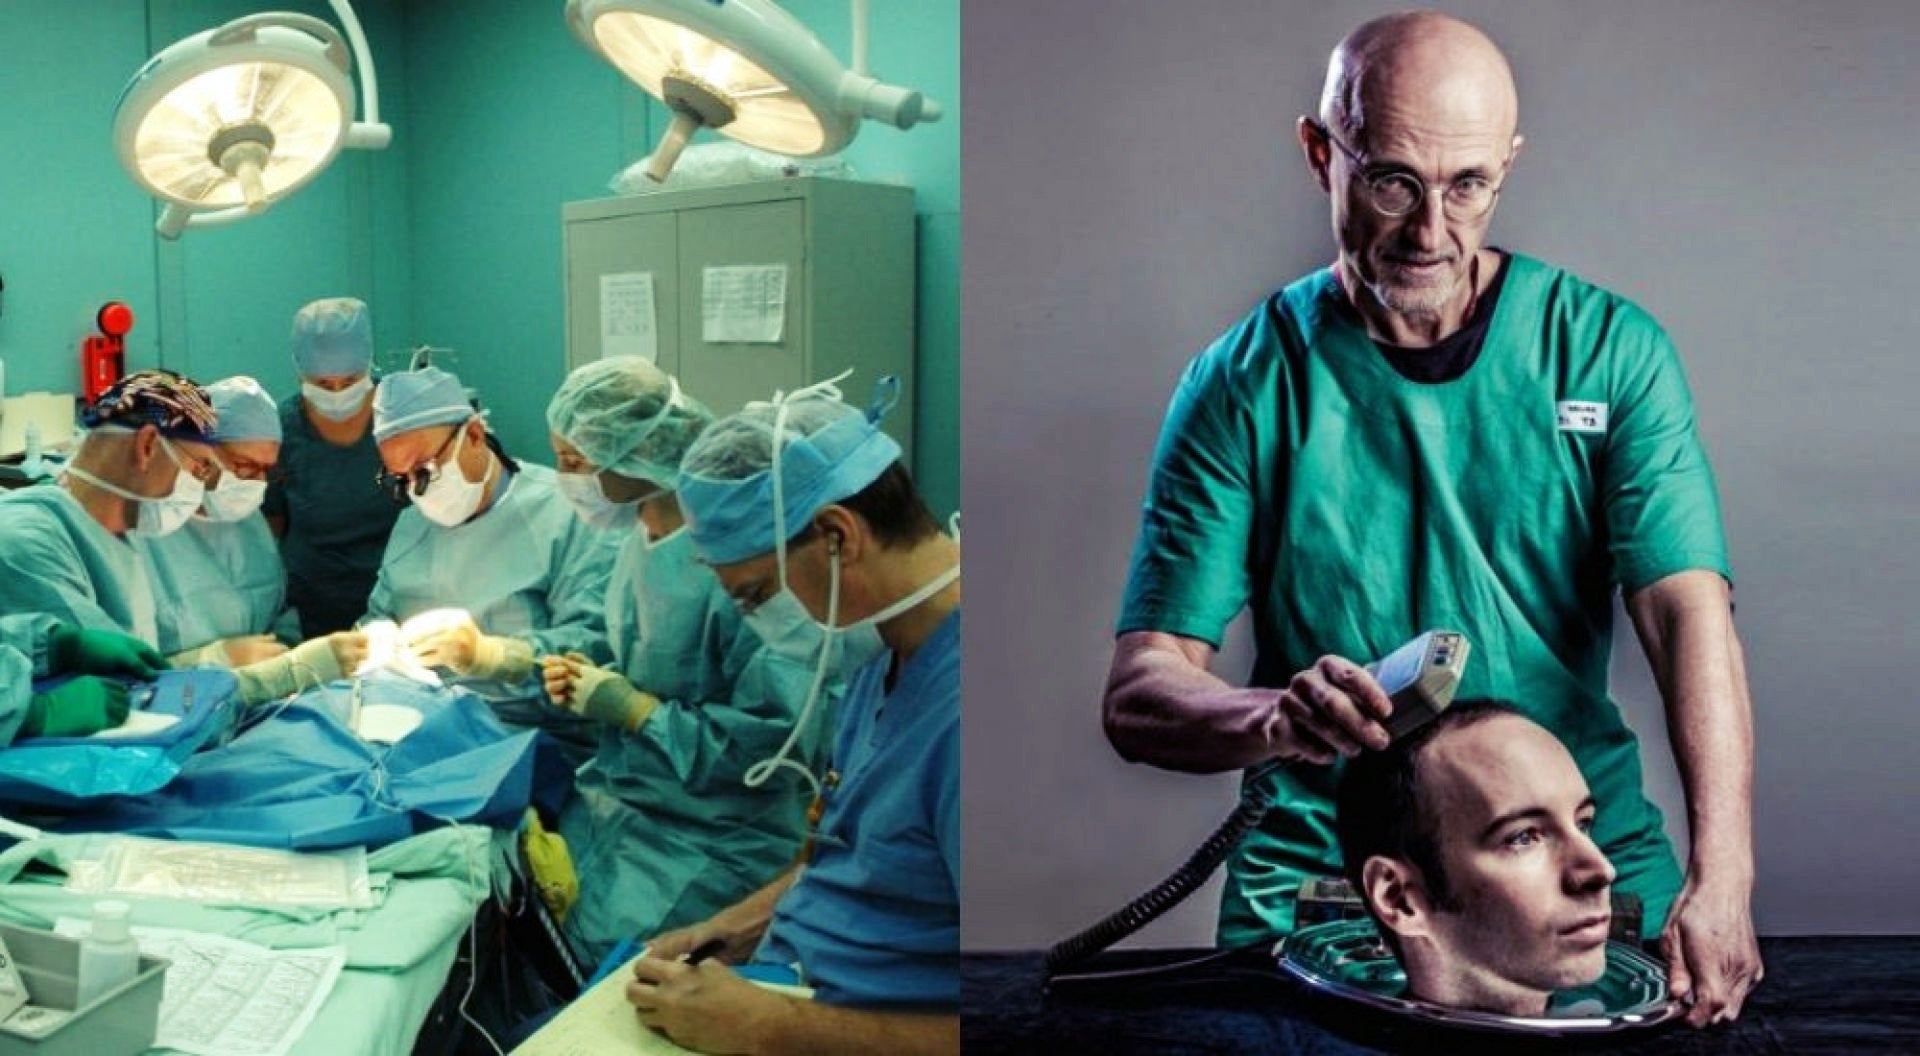 Μεταμόσχευση κεφαλιού: Μέχρι το 2030 θα γίνει η πρώτη επέμβαση, λέει διάσημος νευροχειρουργός